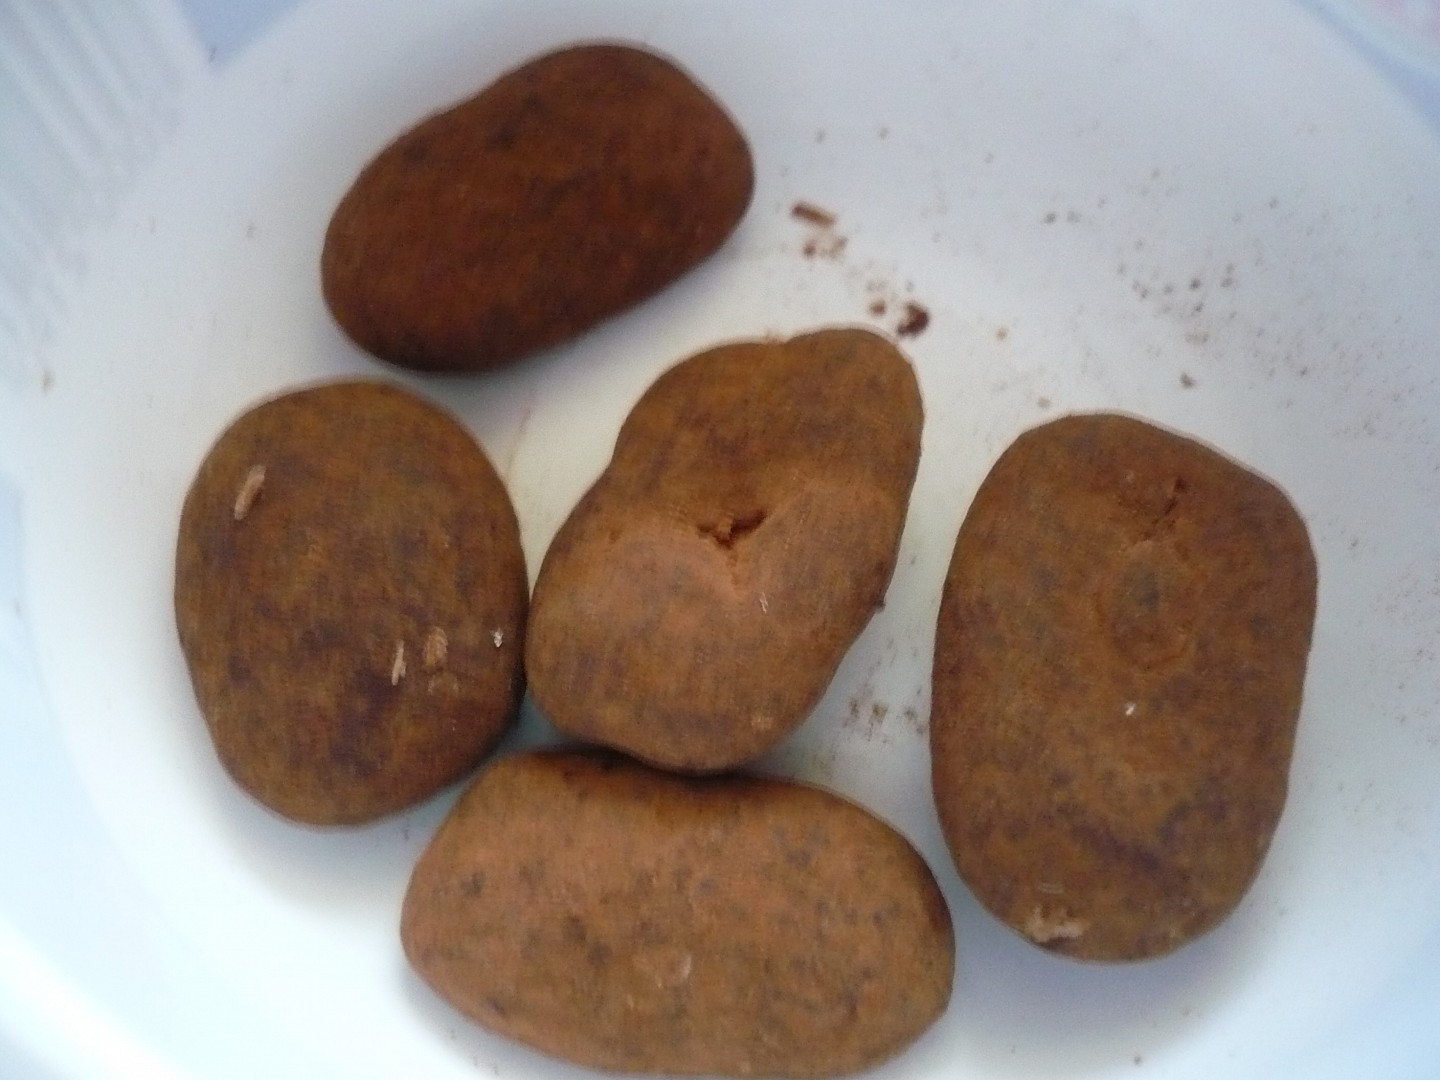 Ořechy v čokoládě